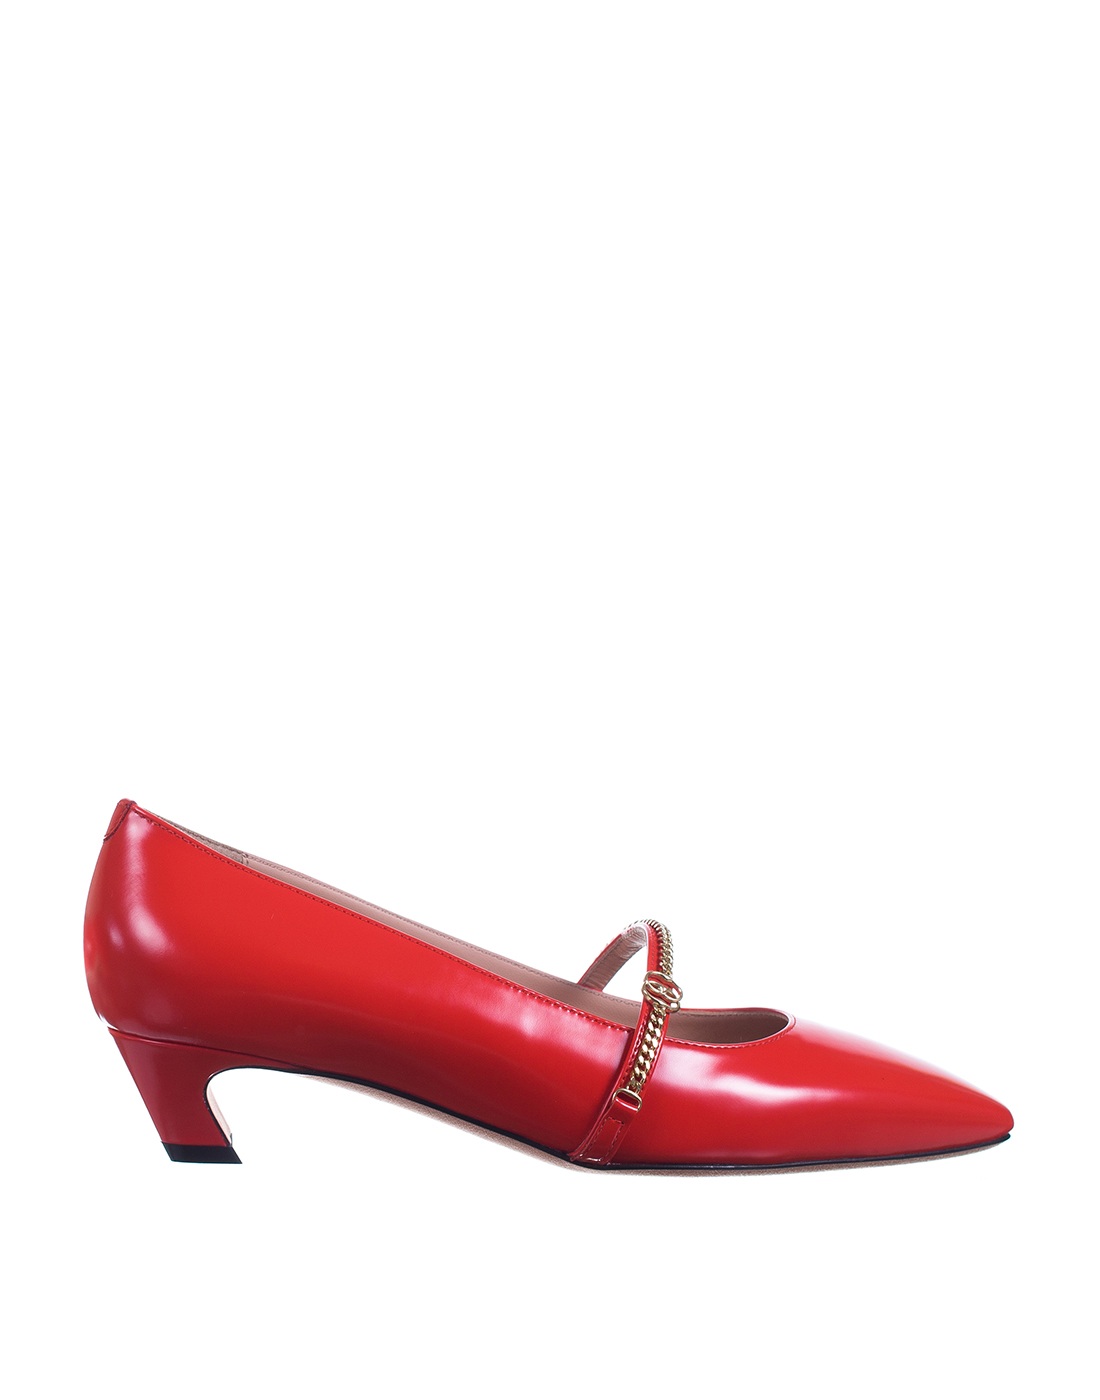 Туфли красные женские  Bally SWP350R VT025 U382-1